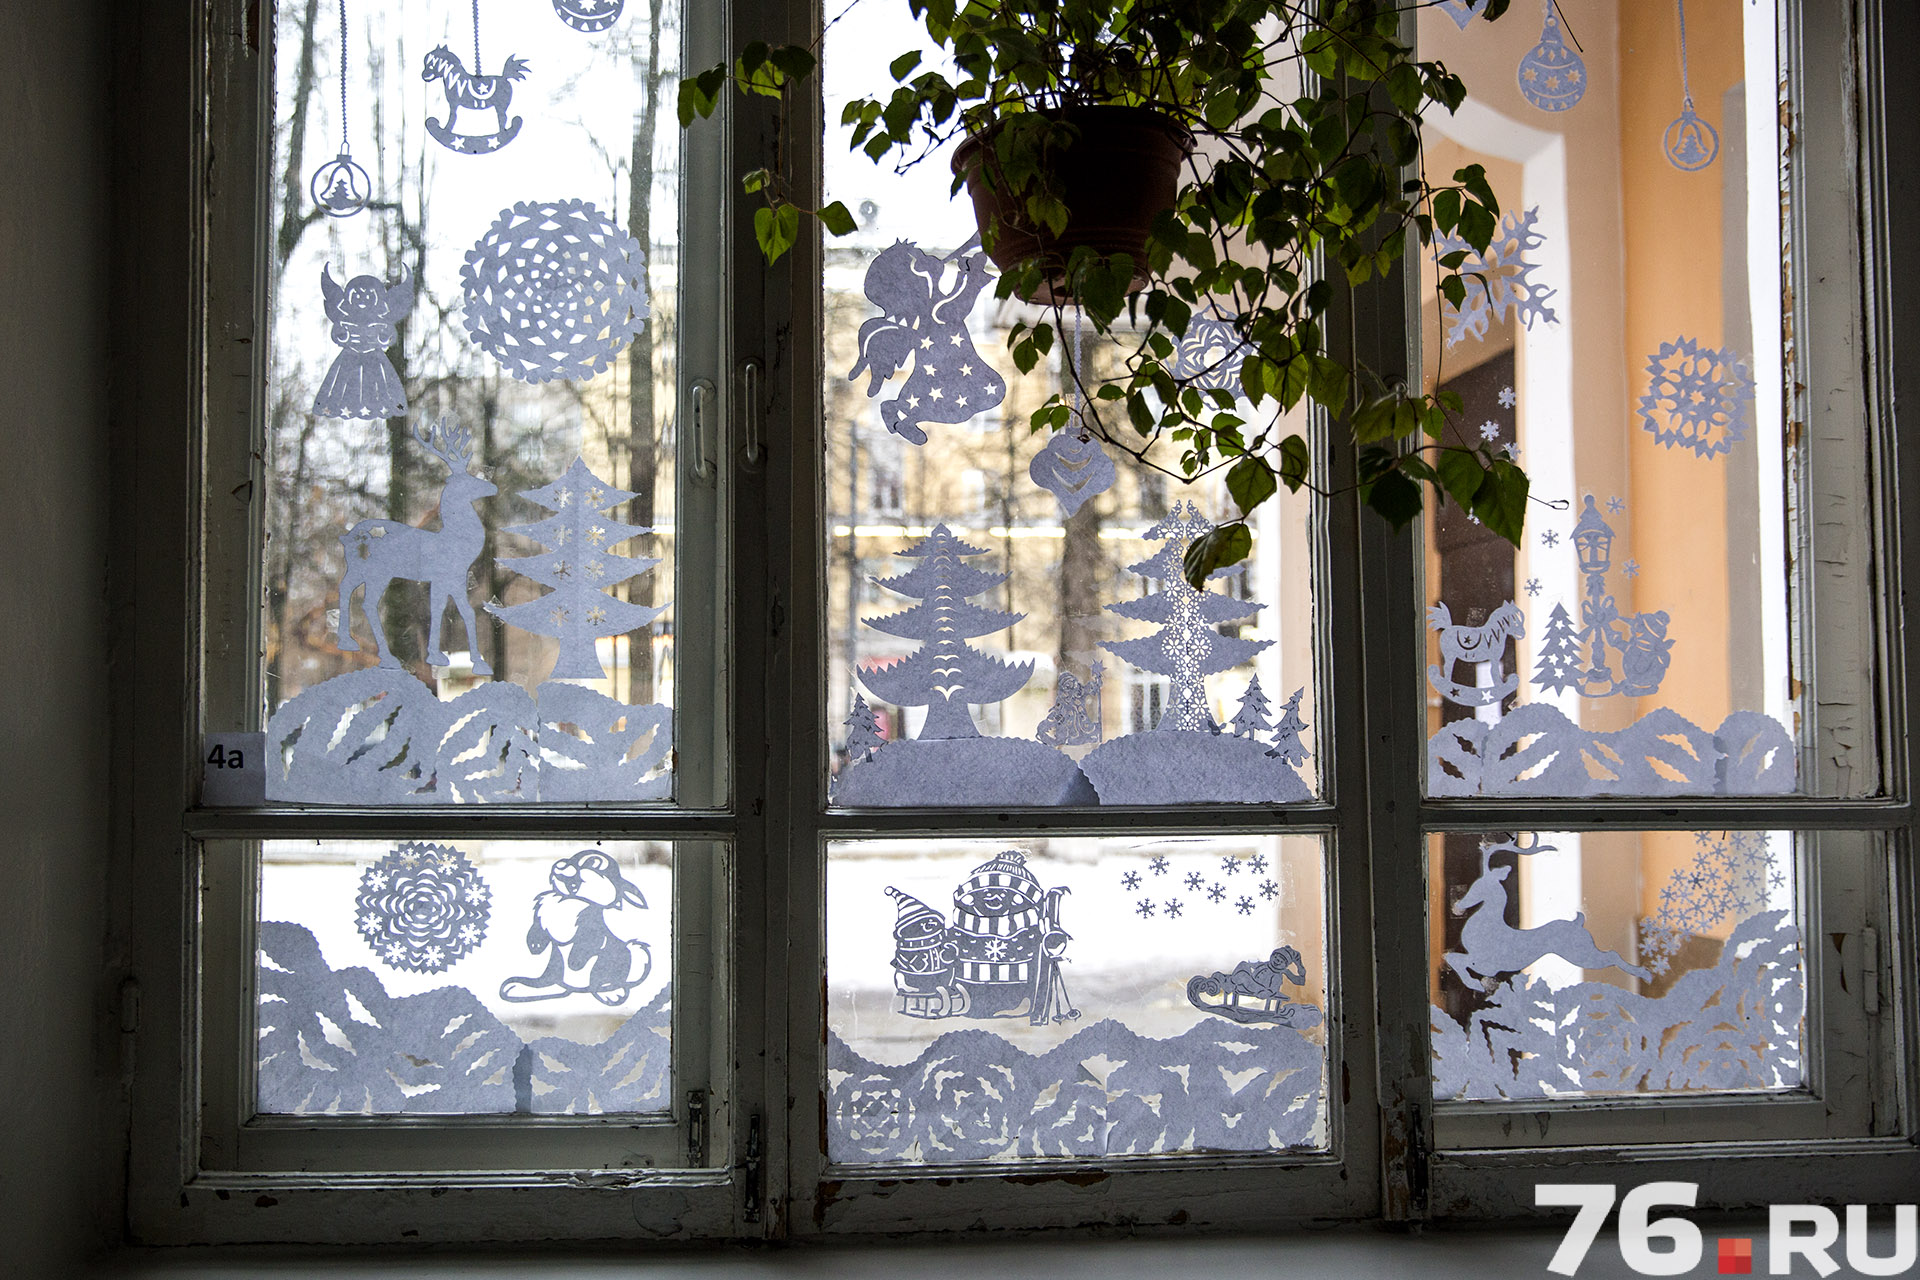 В школе №49 украсили окна двух этажей красивыми, вырезанными из бумаги фигурками